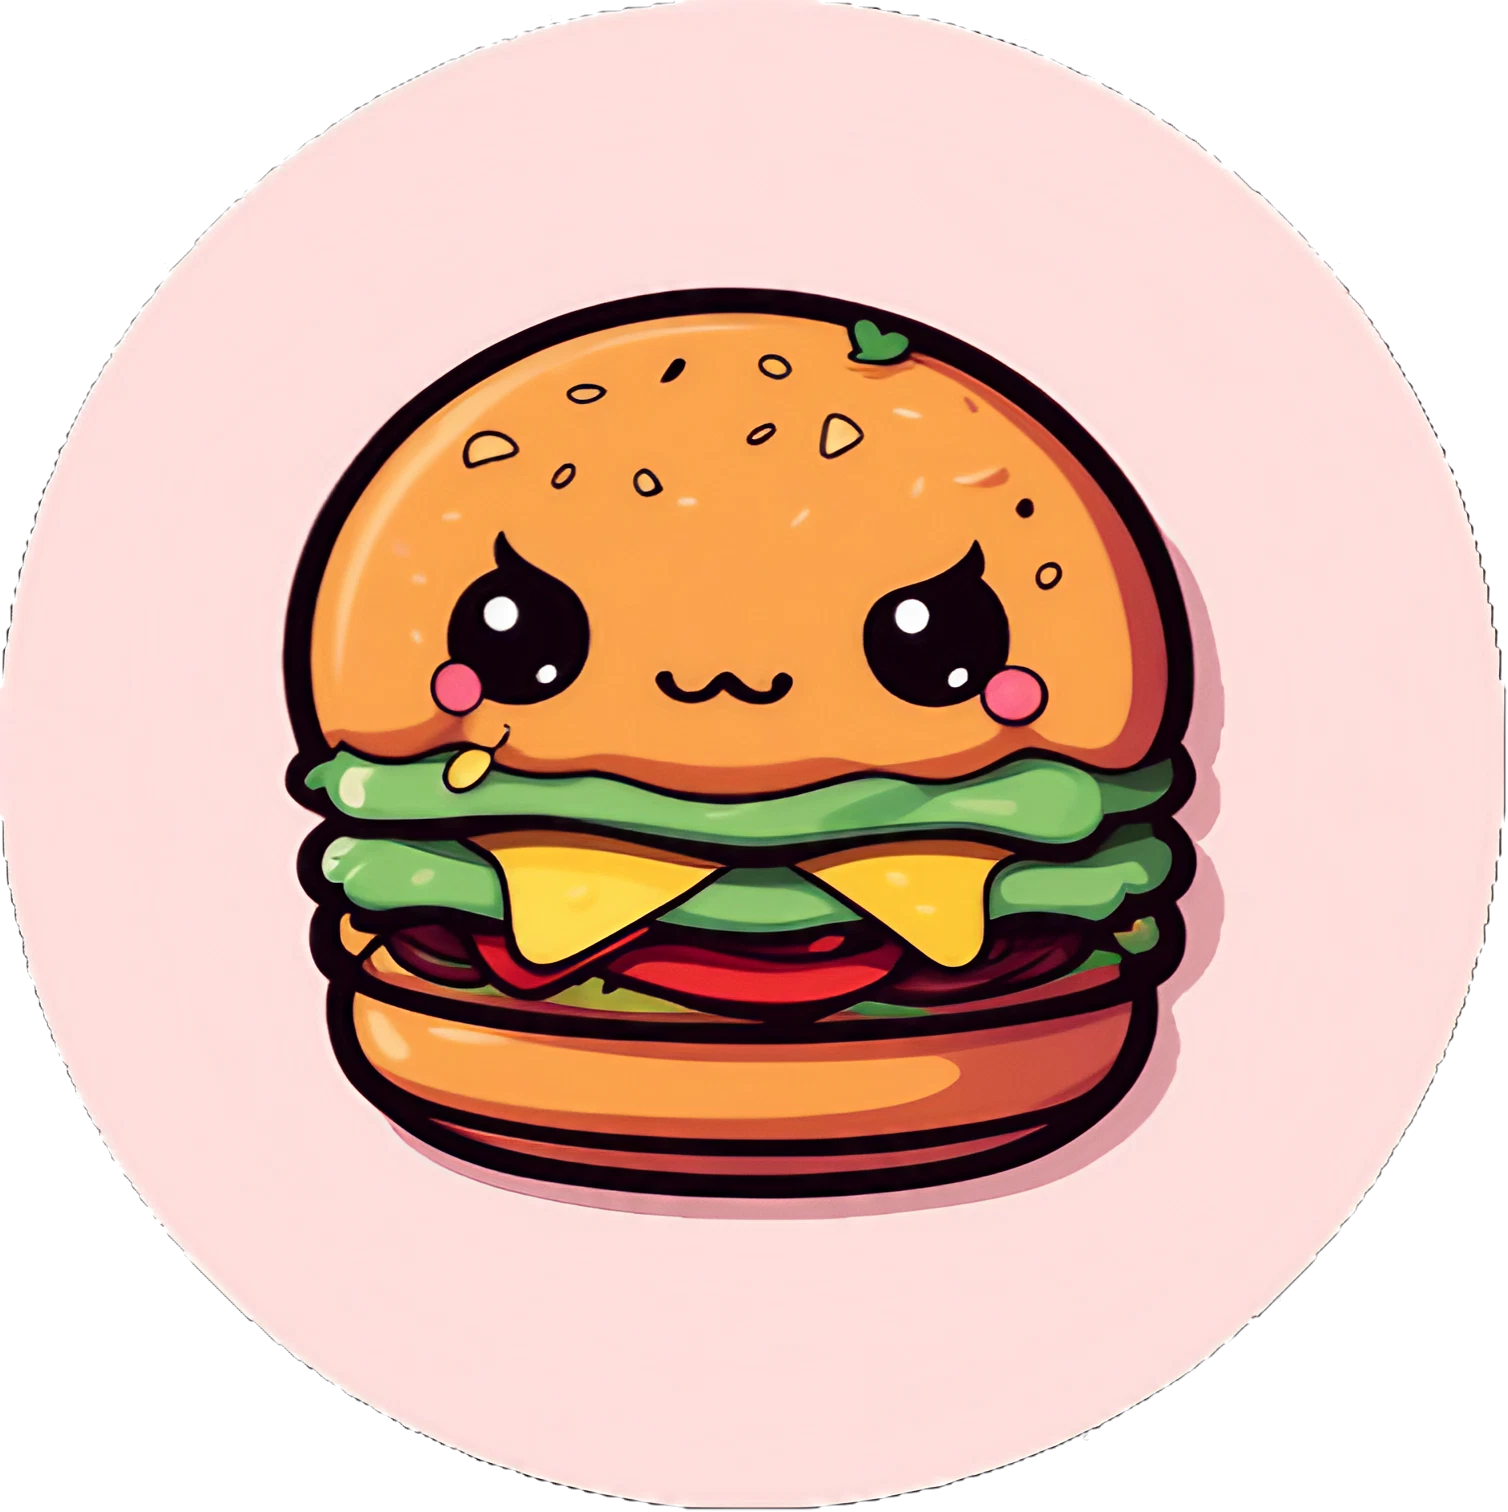 Böser Cute Kawaii Hamburger - Sticker - 3x3cm